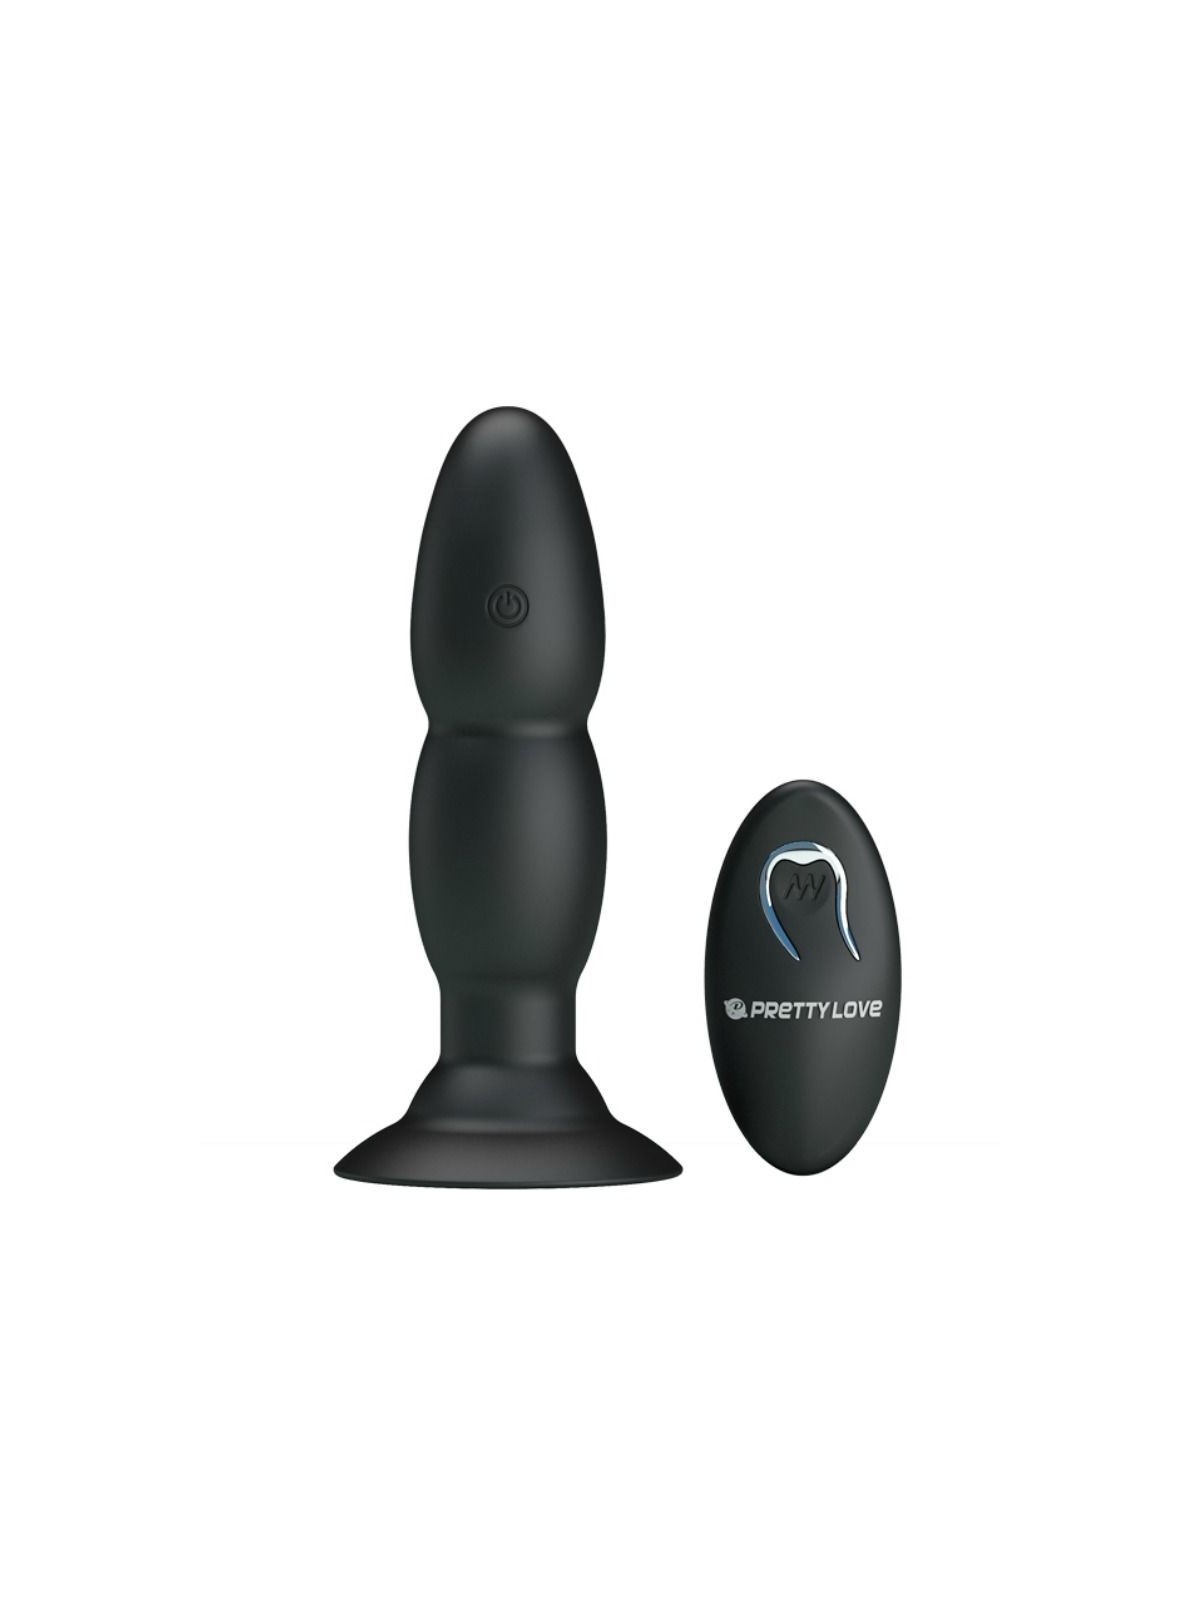 Pretty Love Plug Vibrador & Rotación Por Control Remoto - Comprar Plug anal Pretty Love - Plugs anales (1)